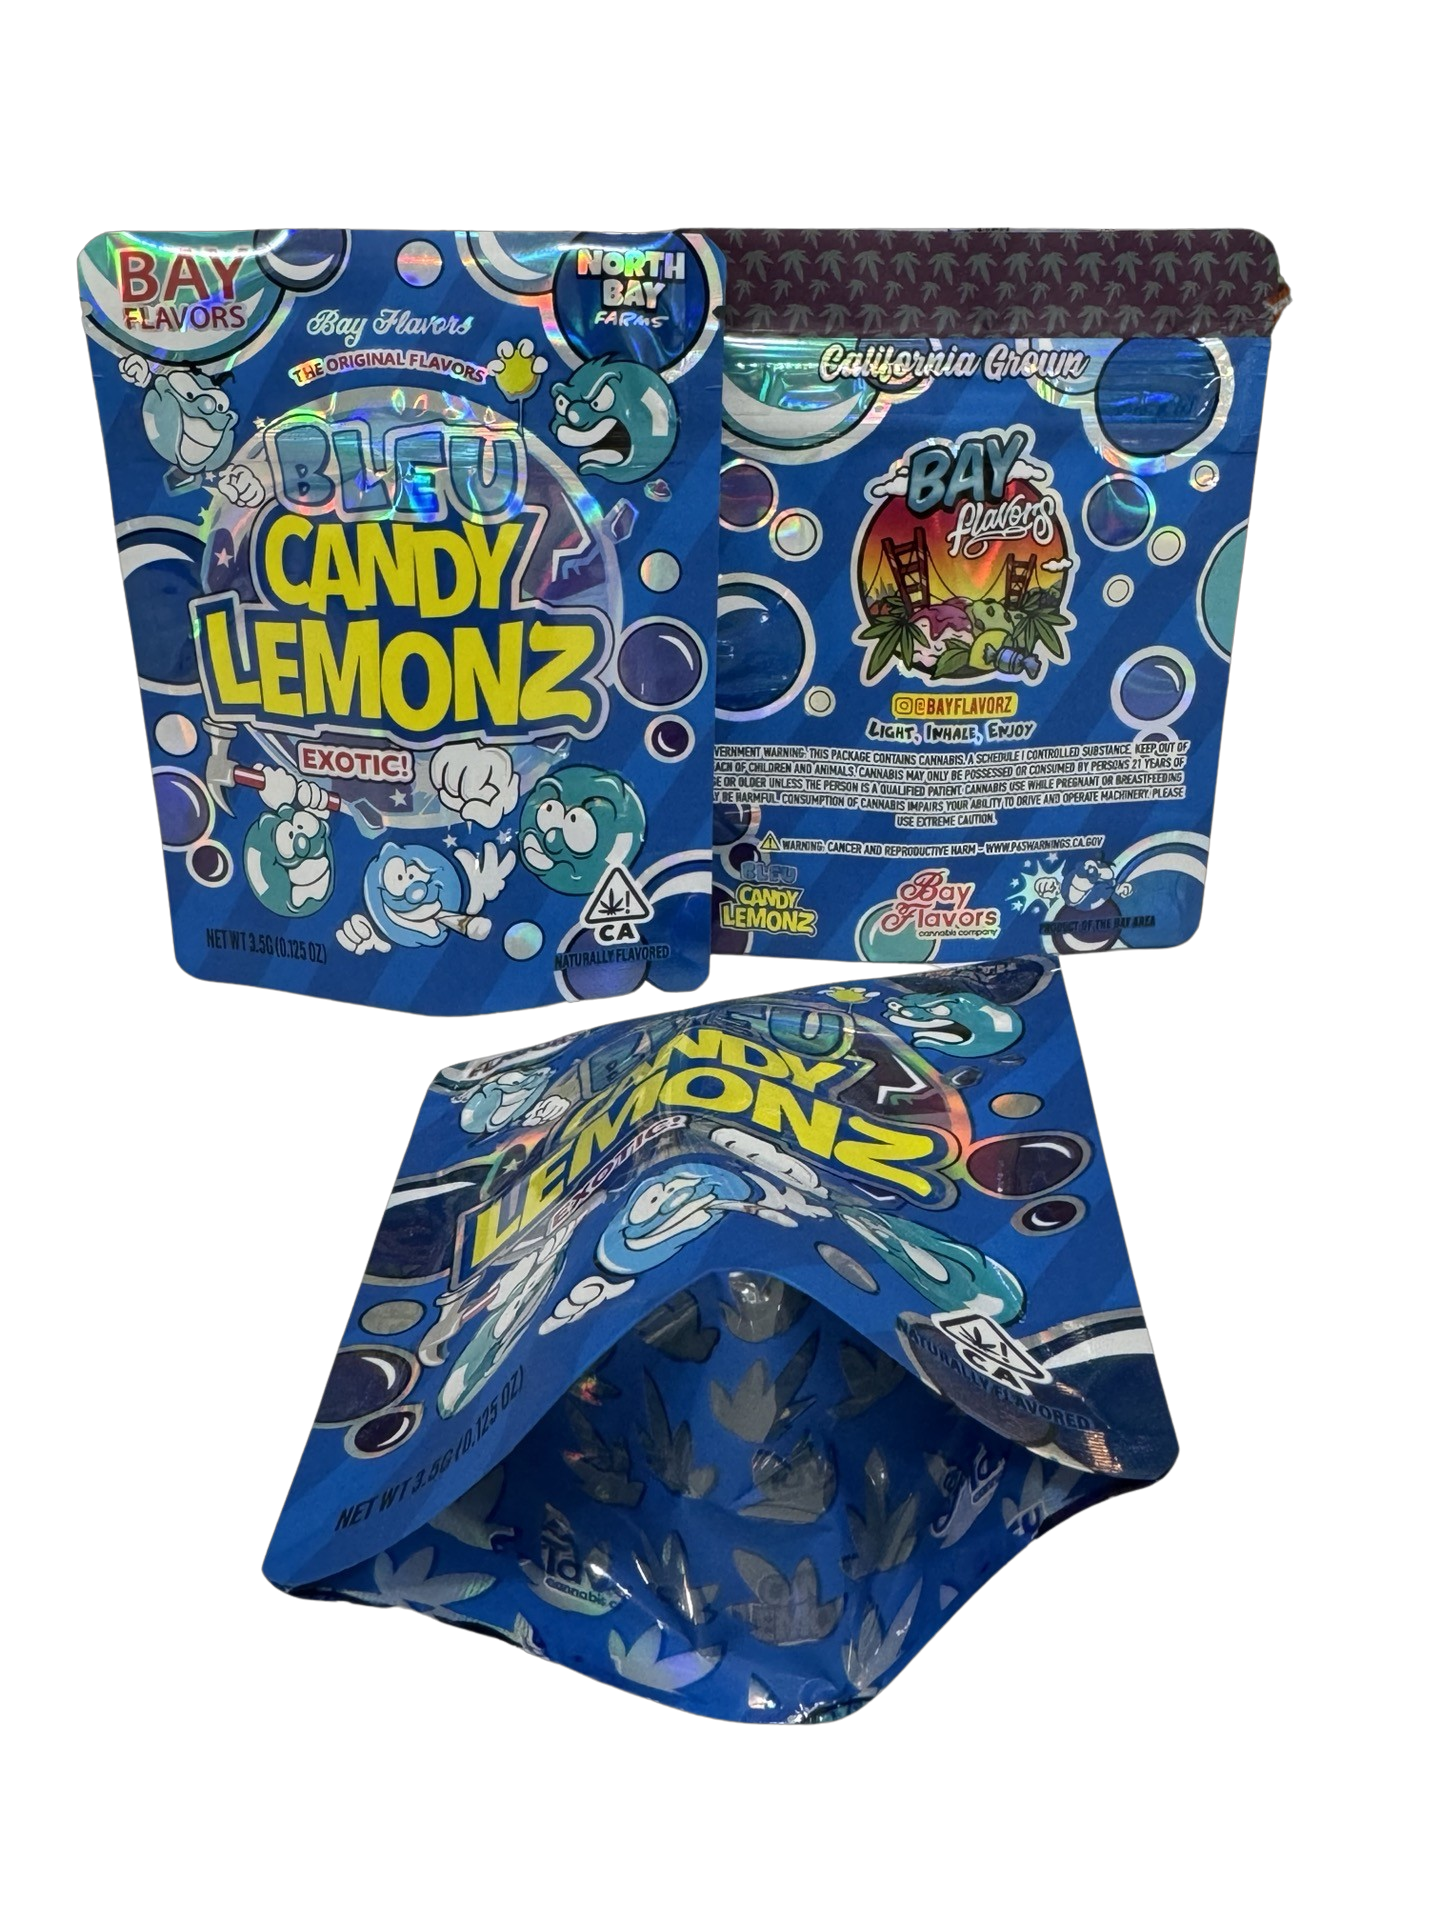 Bleu Candy Lemonz Mylar Bags 3.5g Bay Flavors